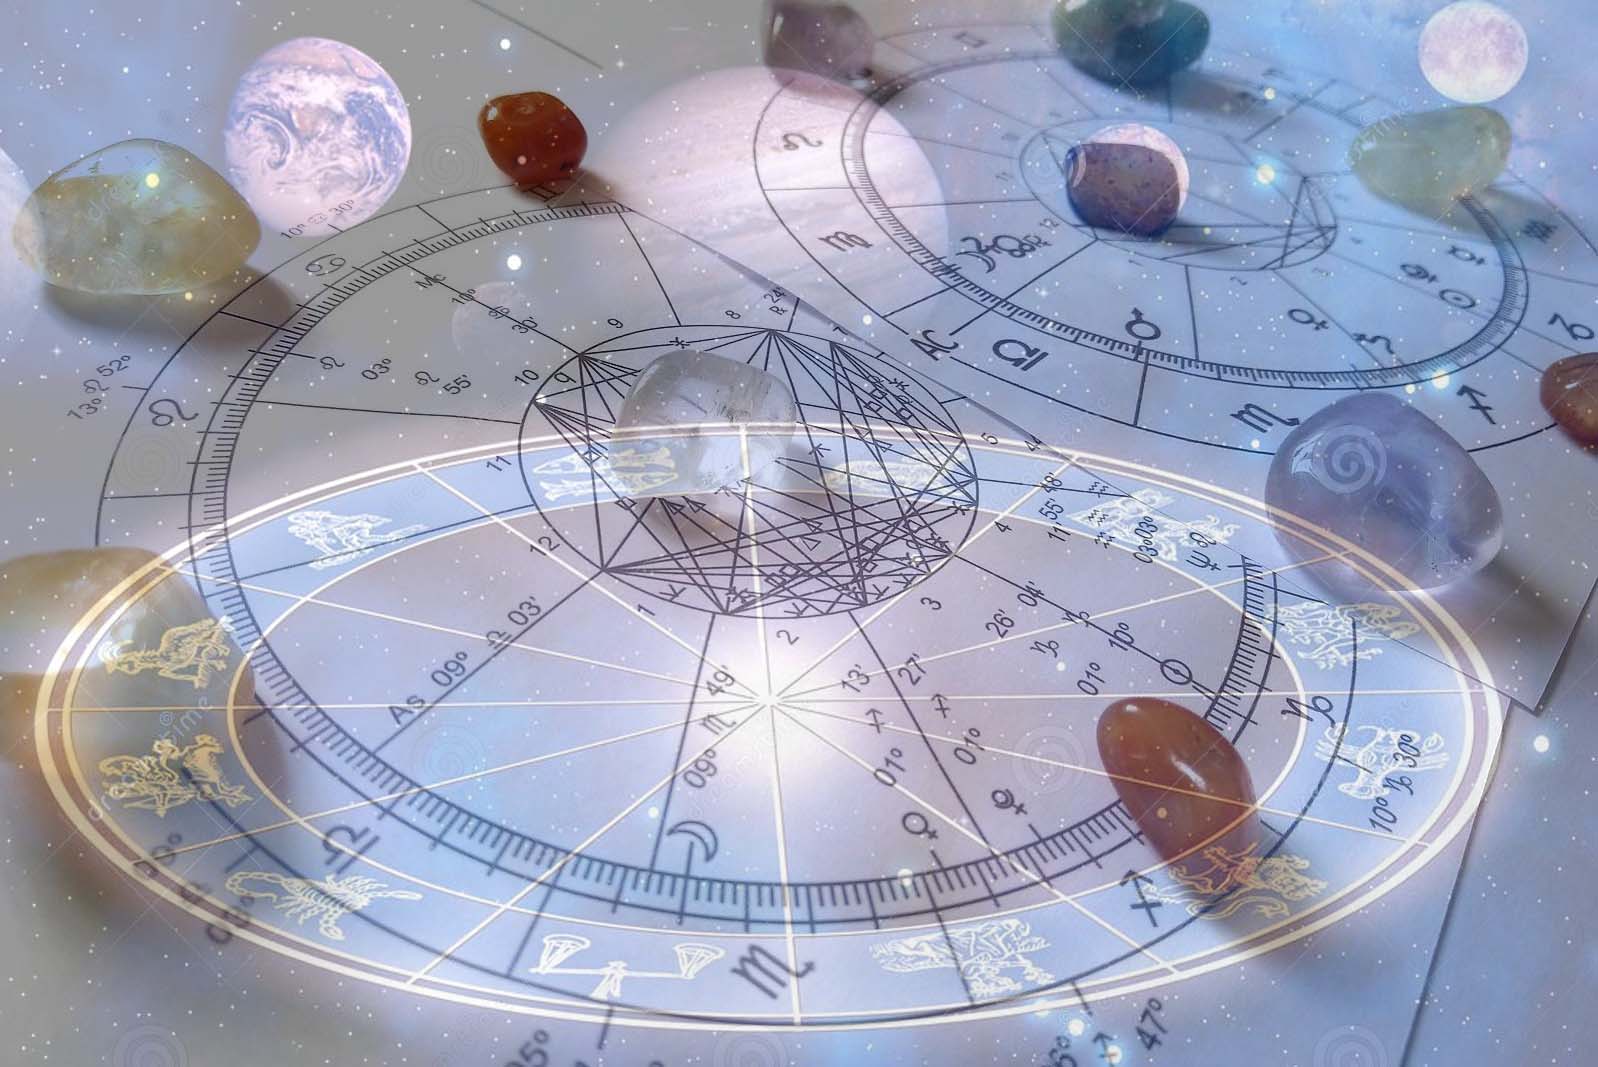 Meditaciones con cartas astrales: mandala de planetas y figuras